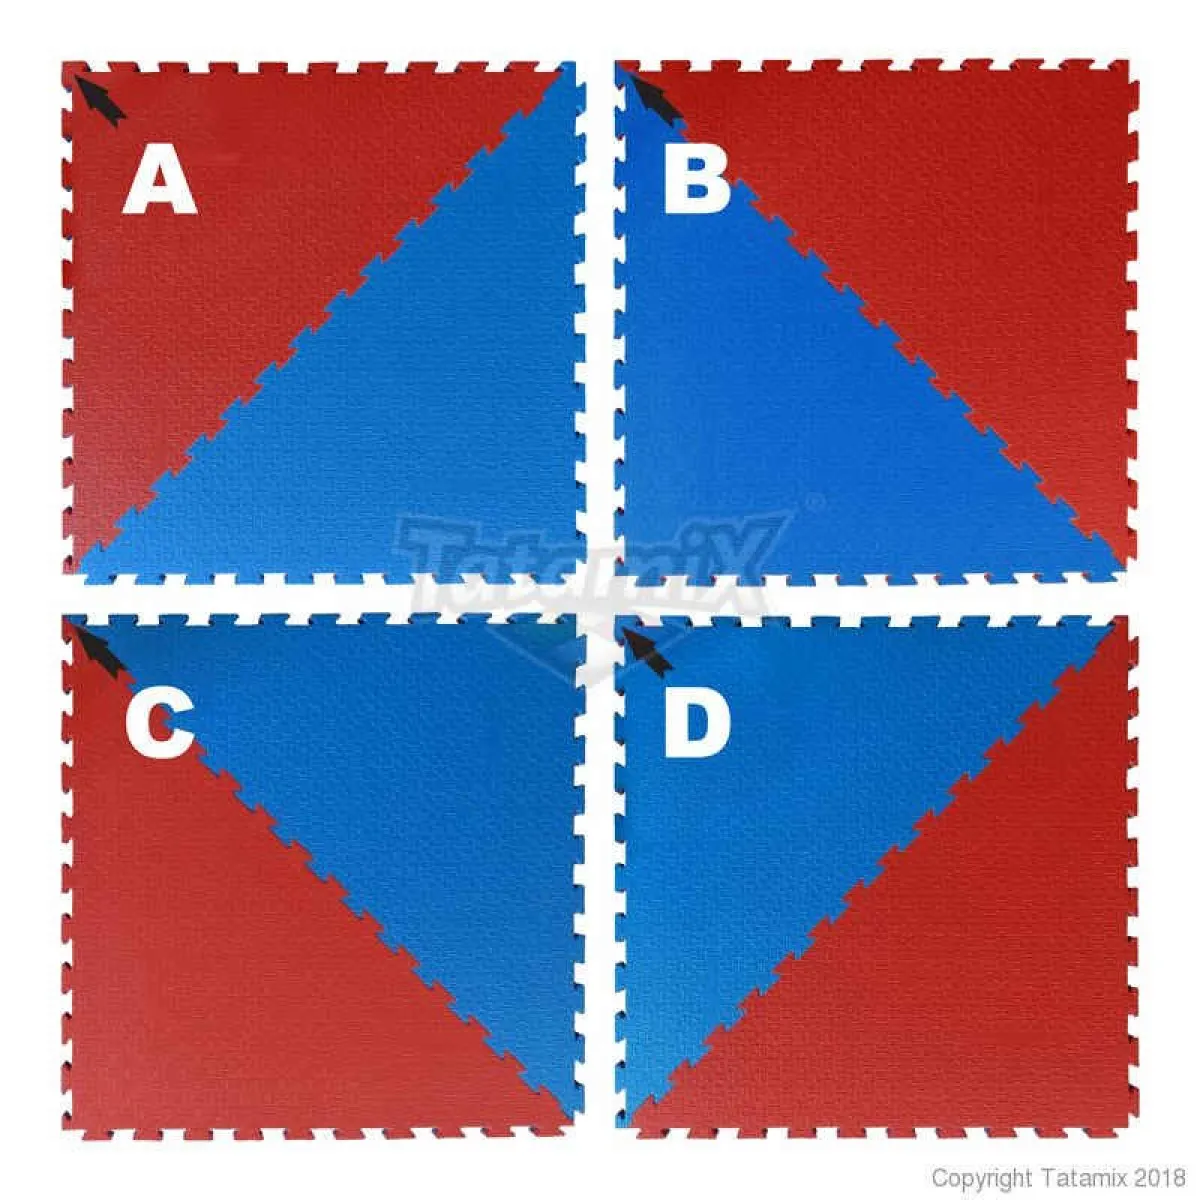 Taekwondo mat red/blue octagon